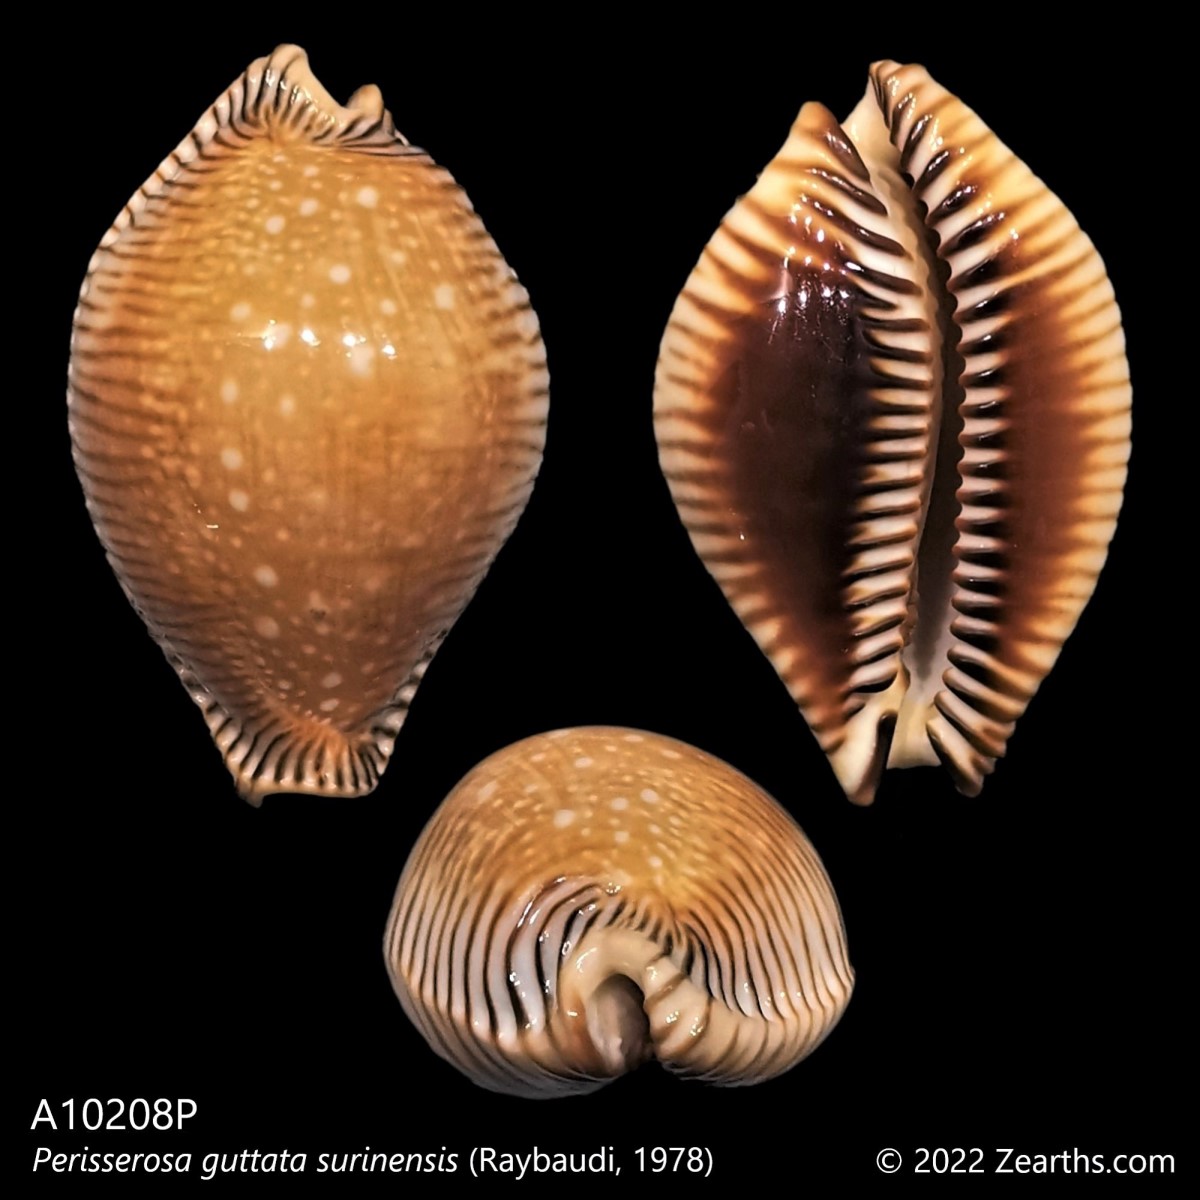 A10208P] Perisserosa guttata surinensis (Raybaudi, 1978